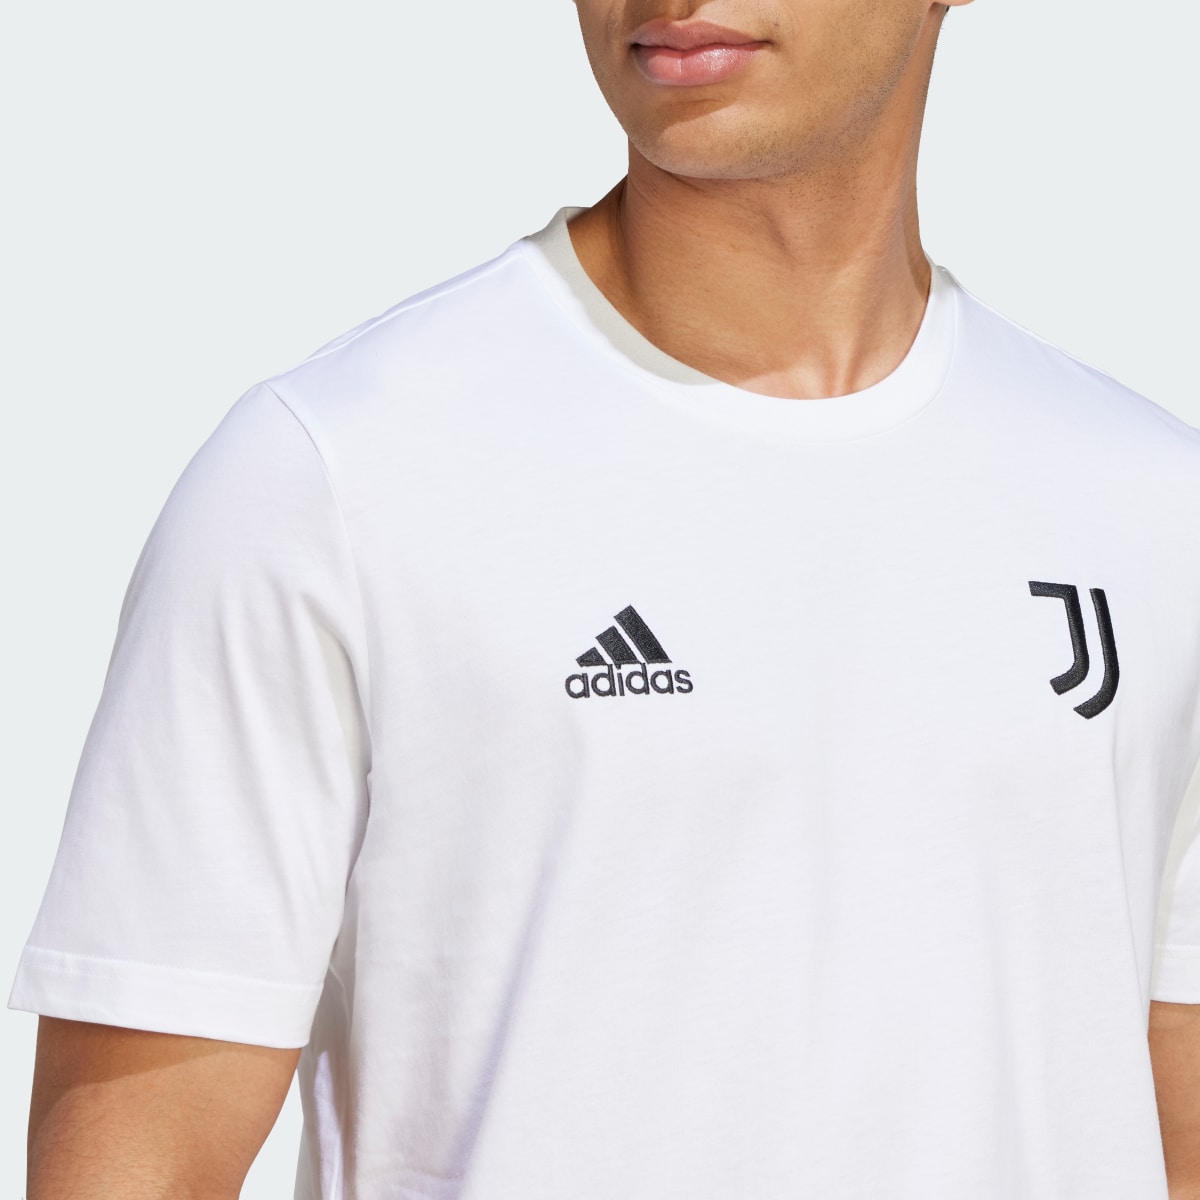 Adidas T-shirt DNA da Juventus. 7